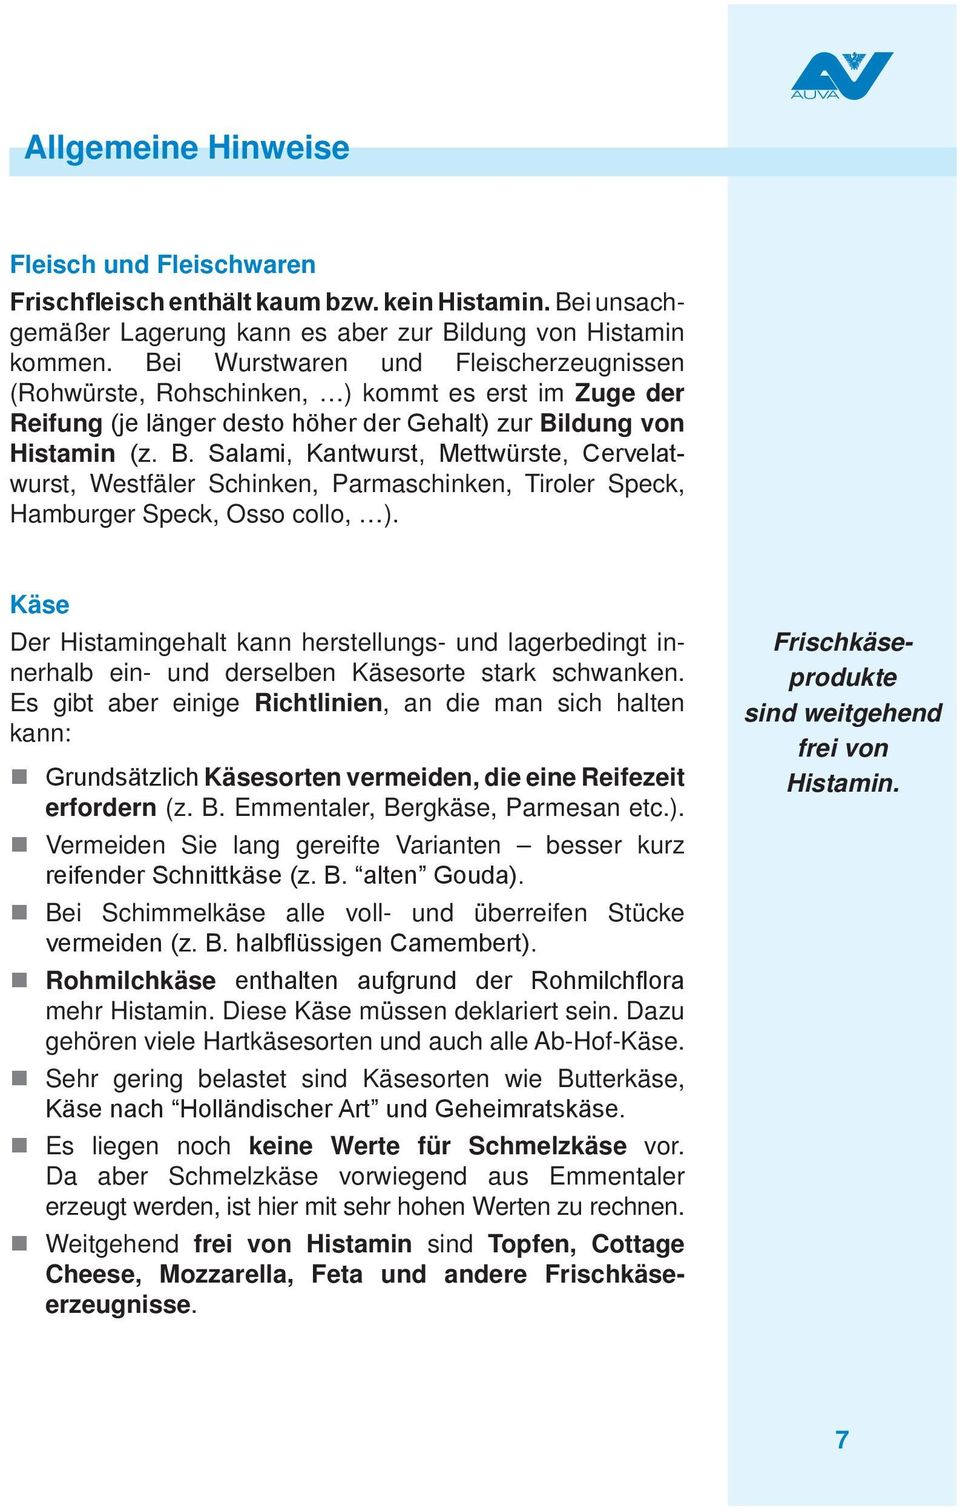 ldung von Histamin (z. B. Salami, Kantwurst, Mettwürste, Cervelatwurst, Westfäler Schinken, Parmaschinken, Tiroler Speck, Hamburger Speck, Osso collo, ).